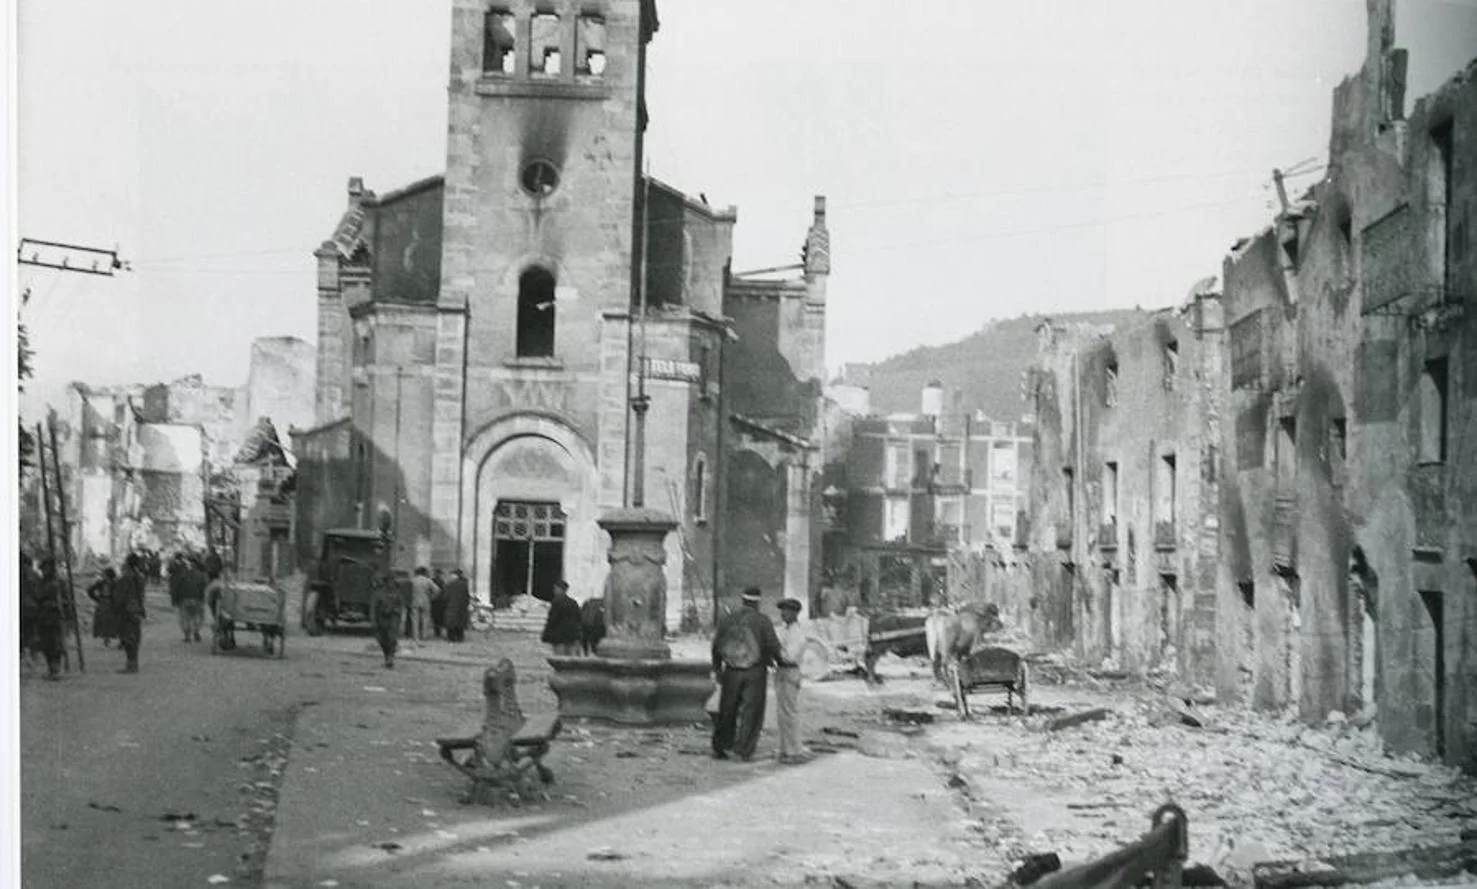 Este miércoles se cumplen 80 años del bombardeo de la Legión Cóndor alemana y la Aviación Legionaria italiana al municipio vizcaíno de Guernica